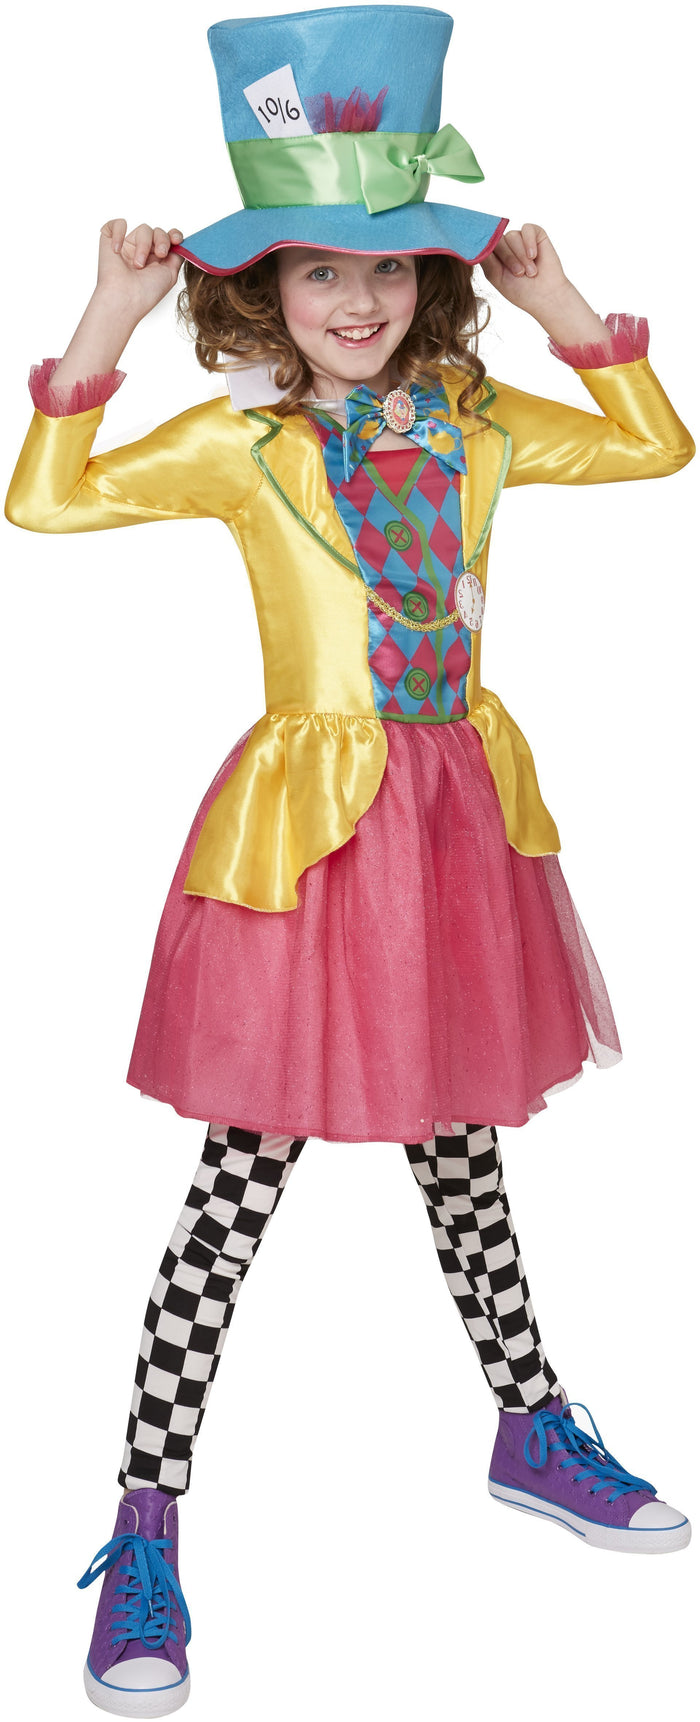 Mad Hatter Deluxe Costume for Tweens & Teens - Disney Alice in Wonderland